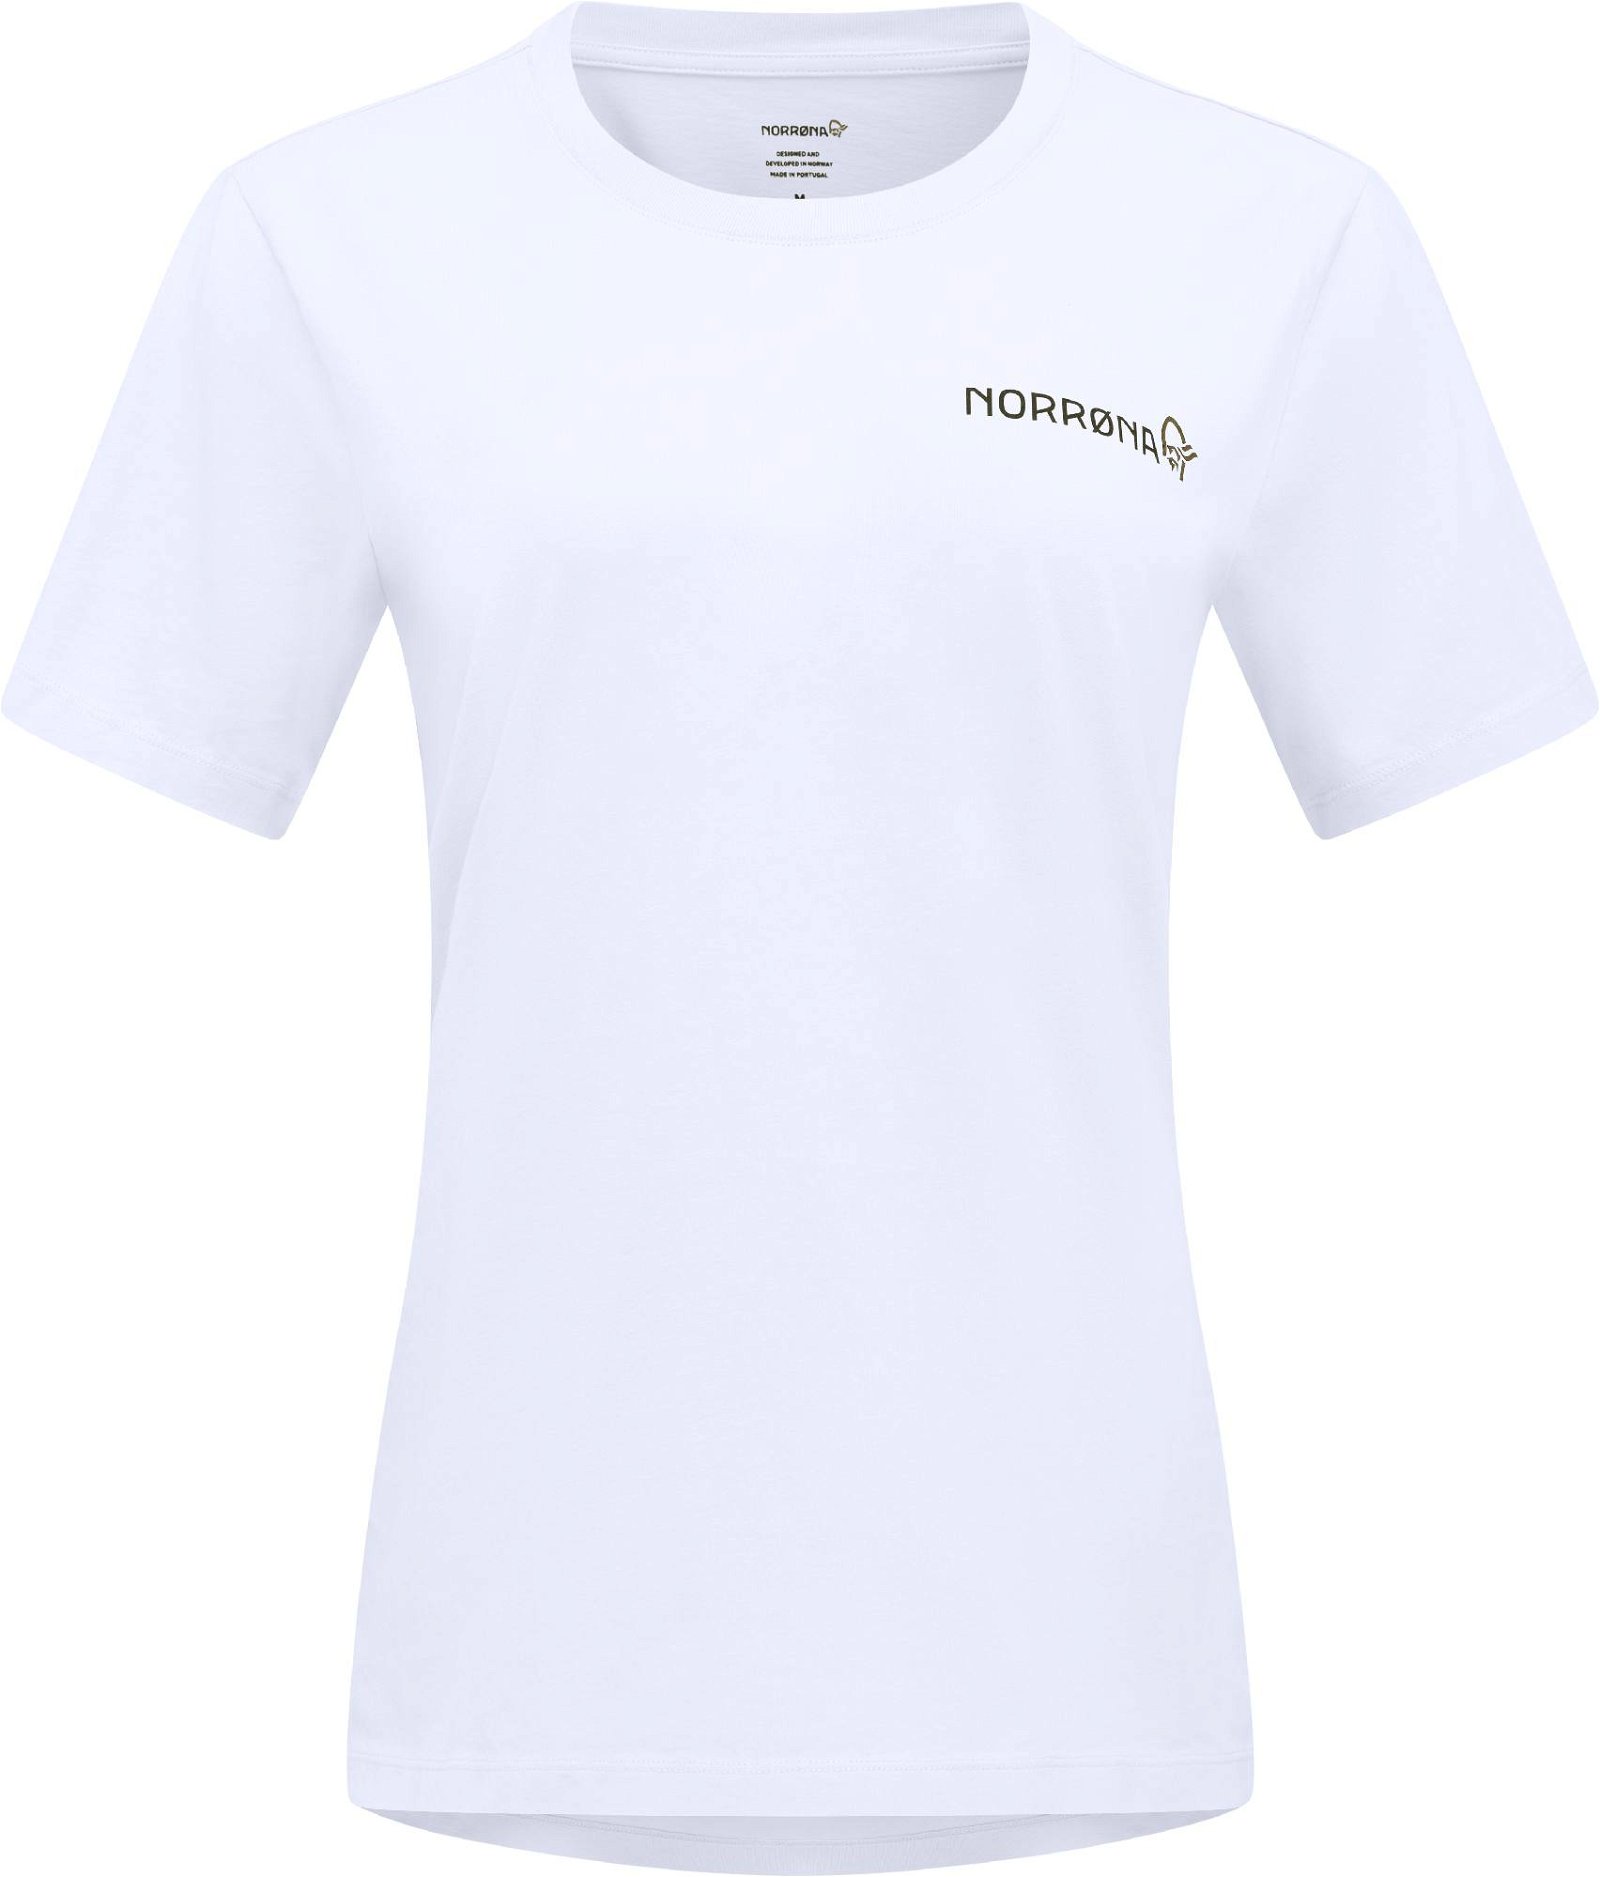 Bilde av Norrøna /29 Cotton Duotone T-shirt W'spure White S